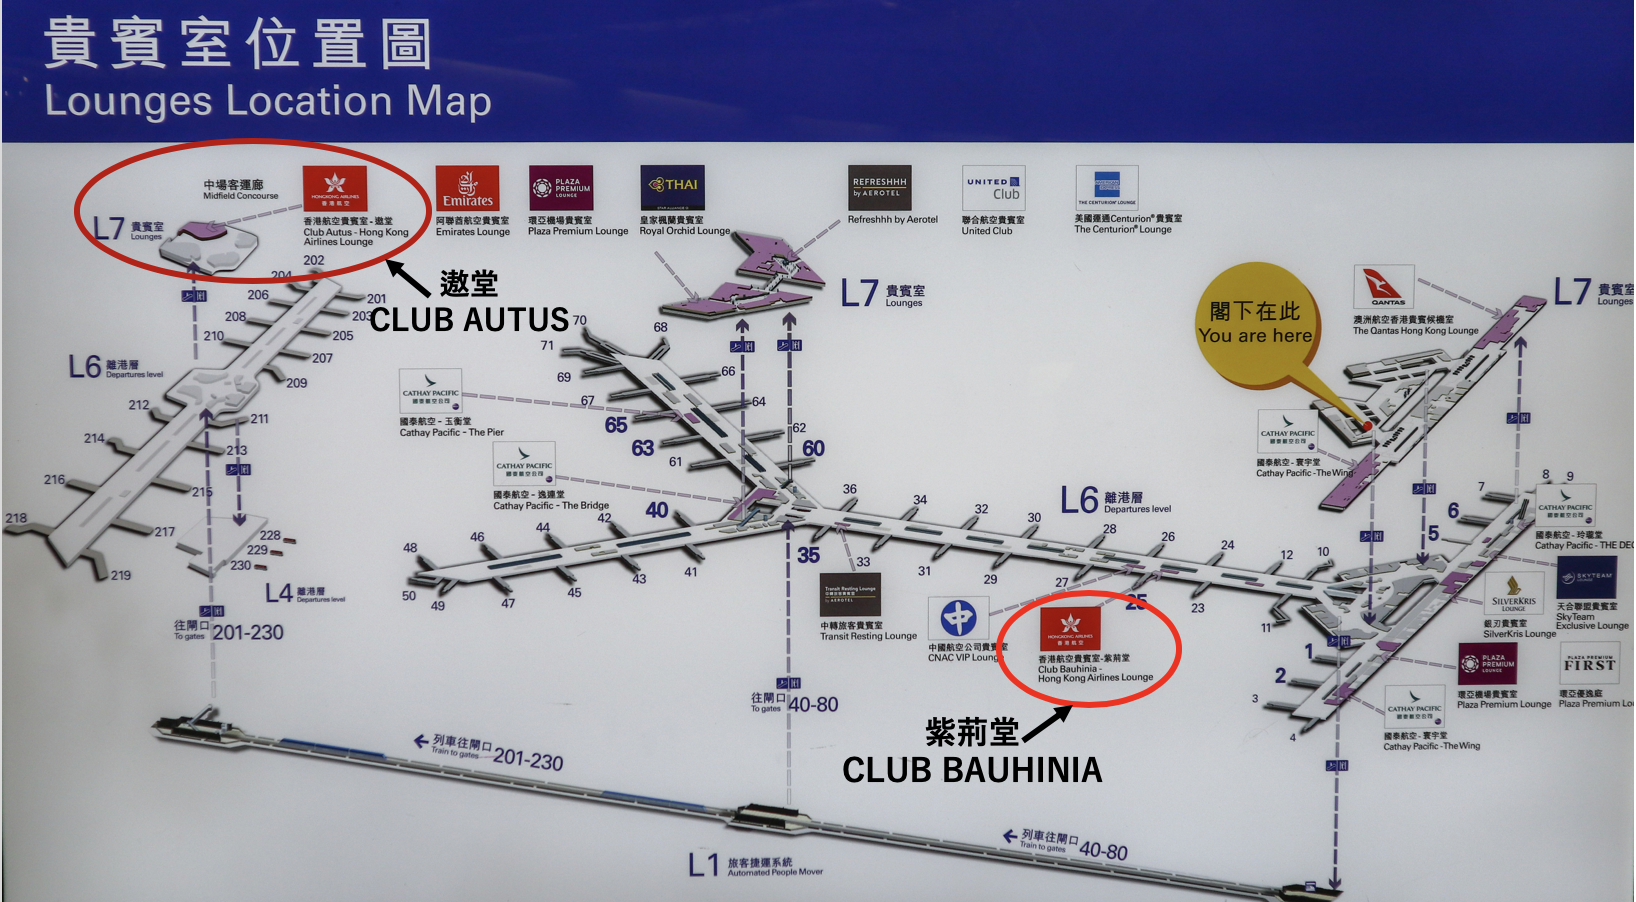 【紫荊堂CLUB BAUHINIA】香港航空貴賓室體驗報告及入Lounge方法